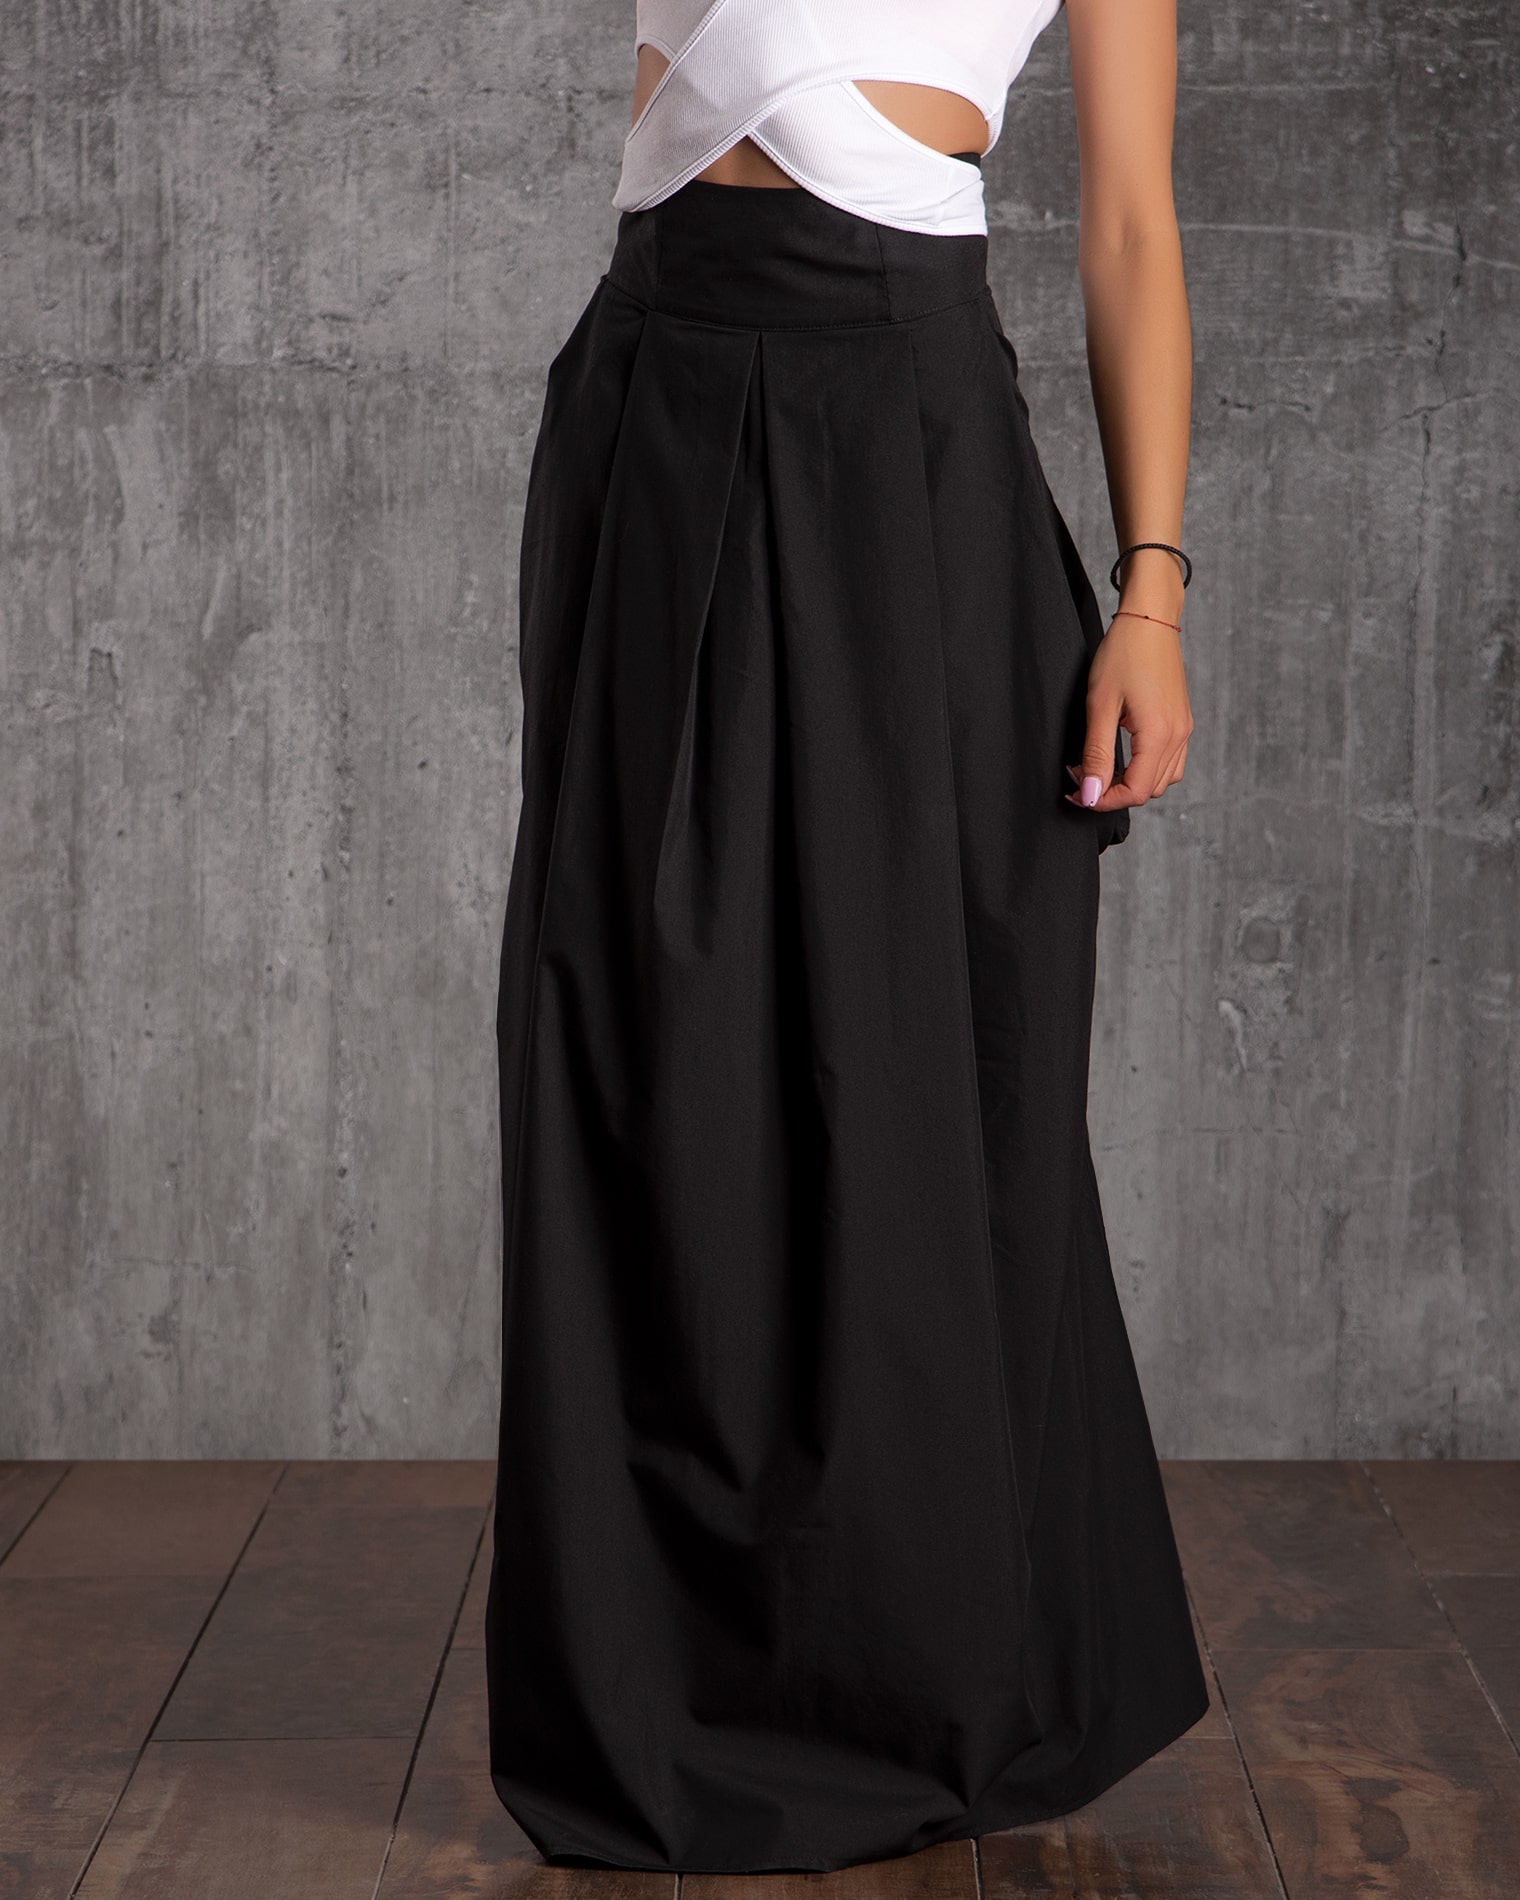 Elegance Maxi Skirt, Black Color